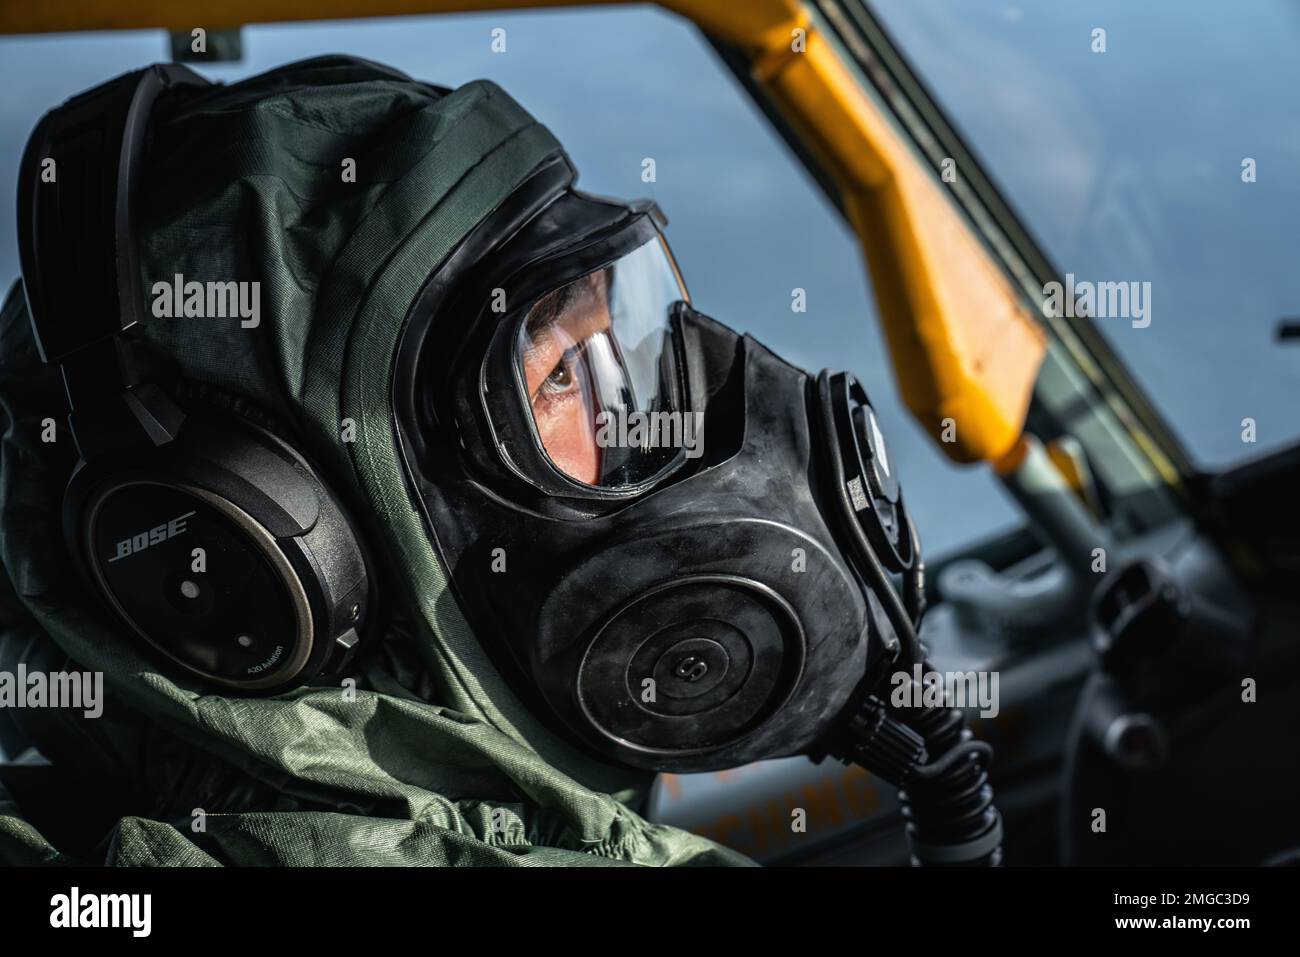 EE.UU El Capitán de la Fuerza Aérea Andrew Bragado, piloto del Escuadrón de  Repostaje Aéreo 50th, usa equipo nuclear y explosivo químico biológico  radiológico en un vuelo durante el ejercicio final de